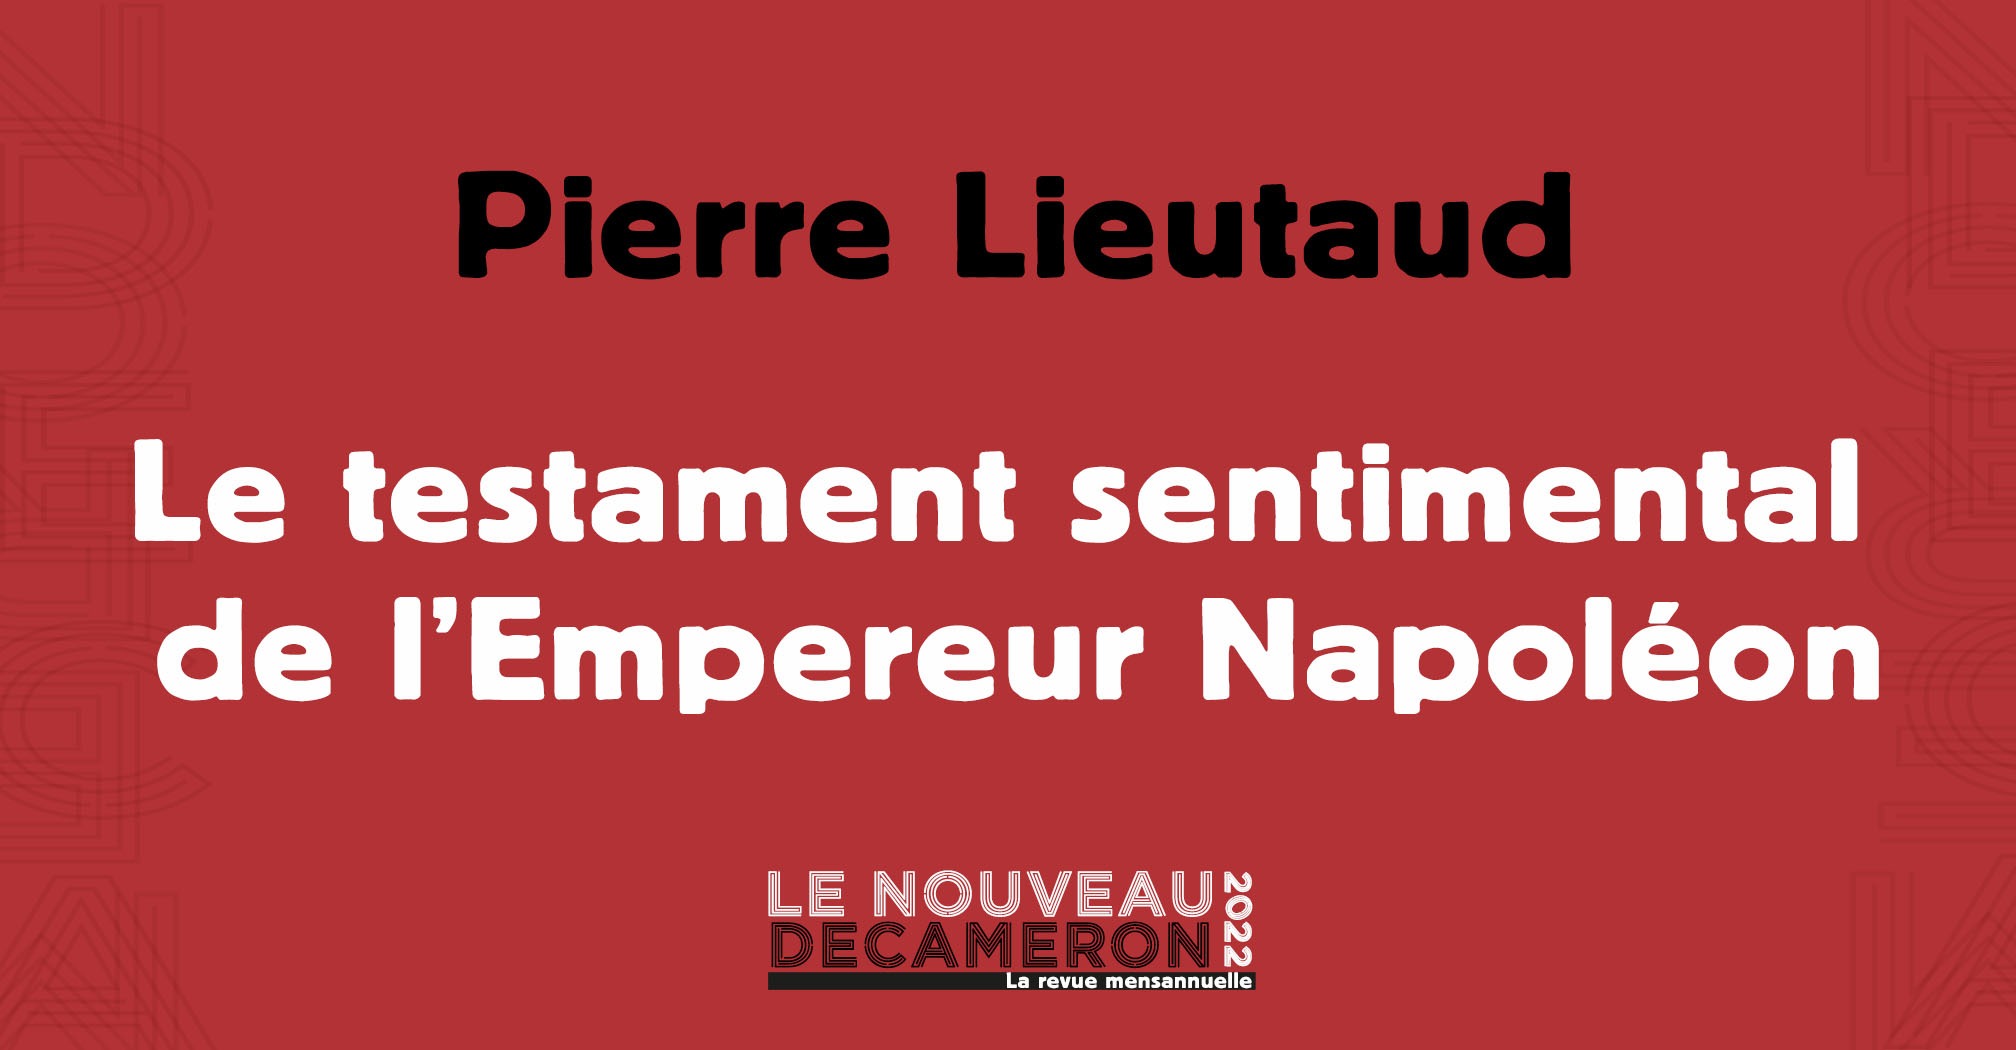 Pierre Lieutaud - Le testament sentimental de l'Empereur Napoléon